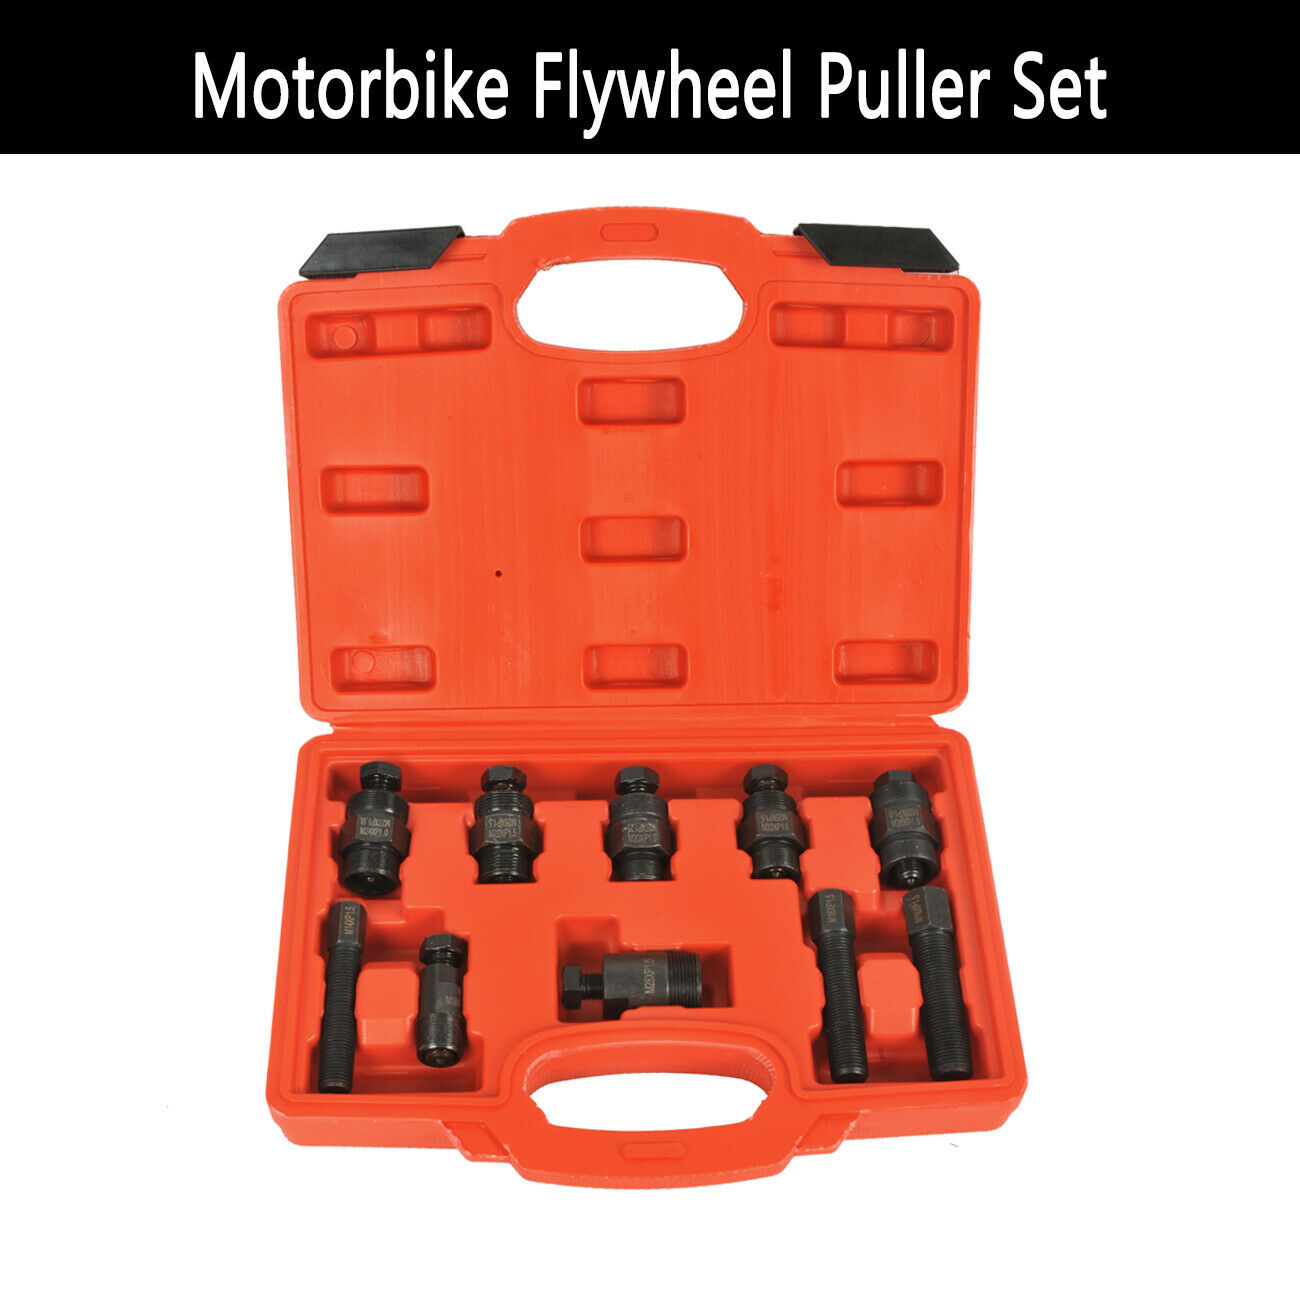 10PCS Motorcycle Flywheel Puller kit